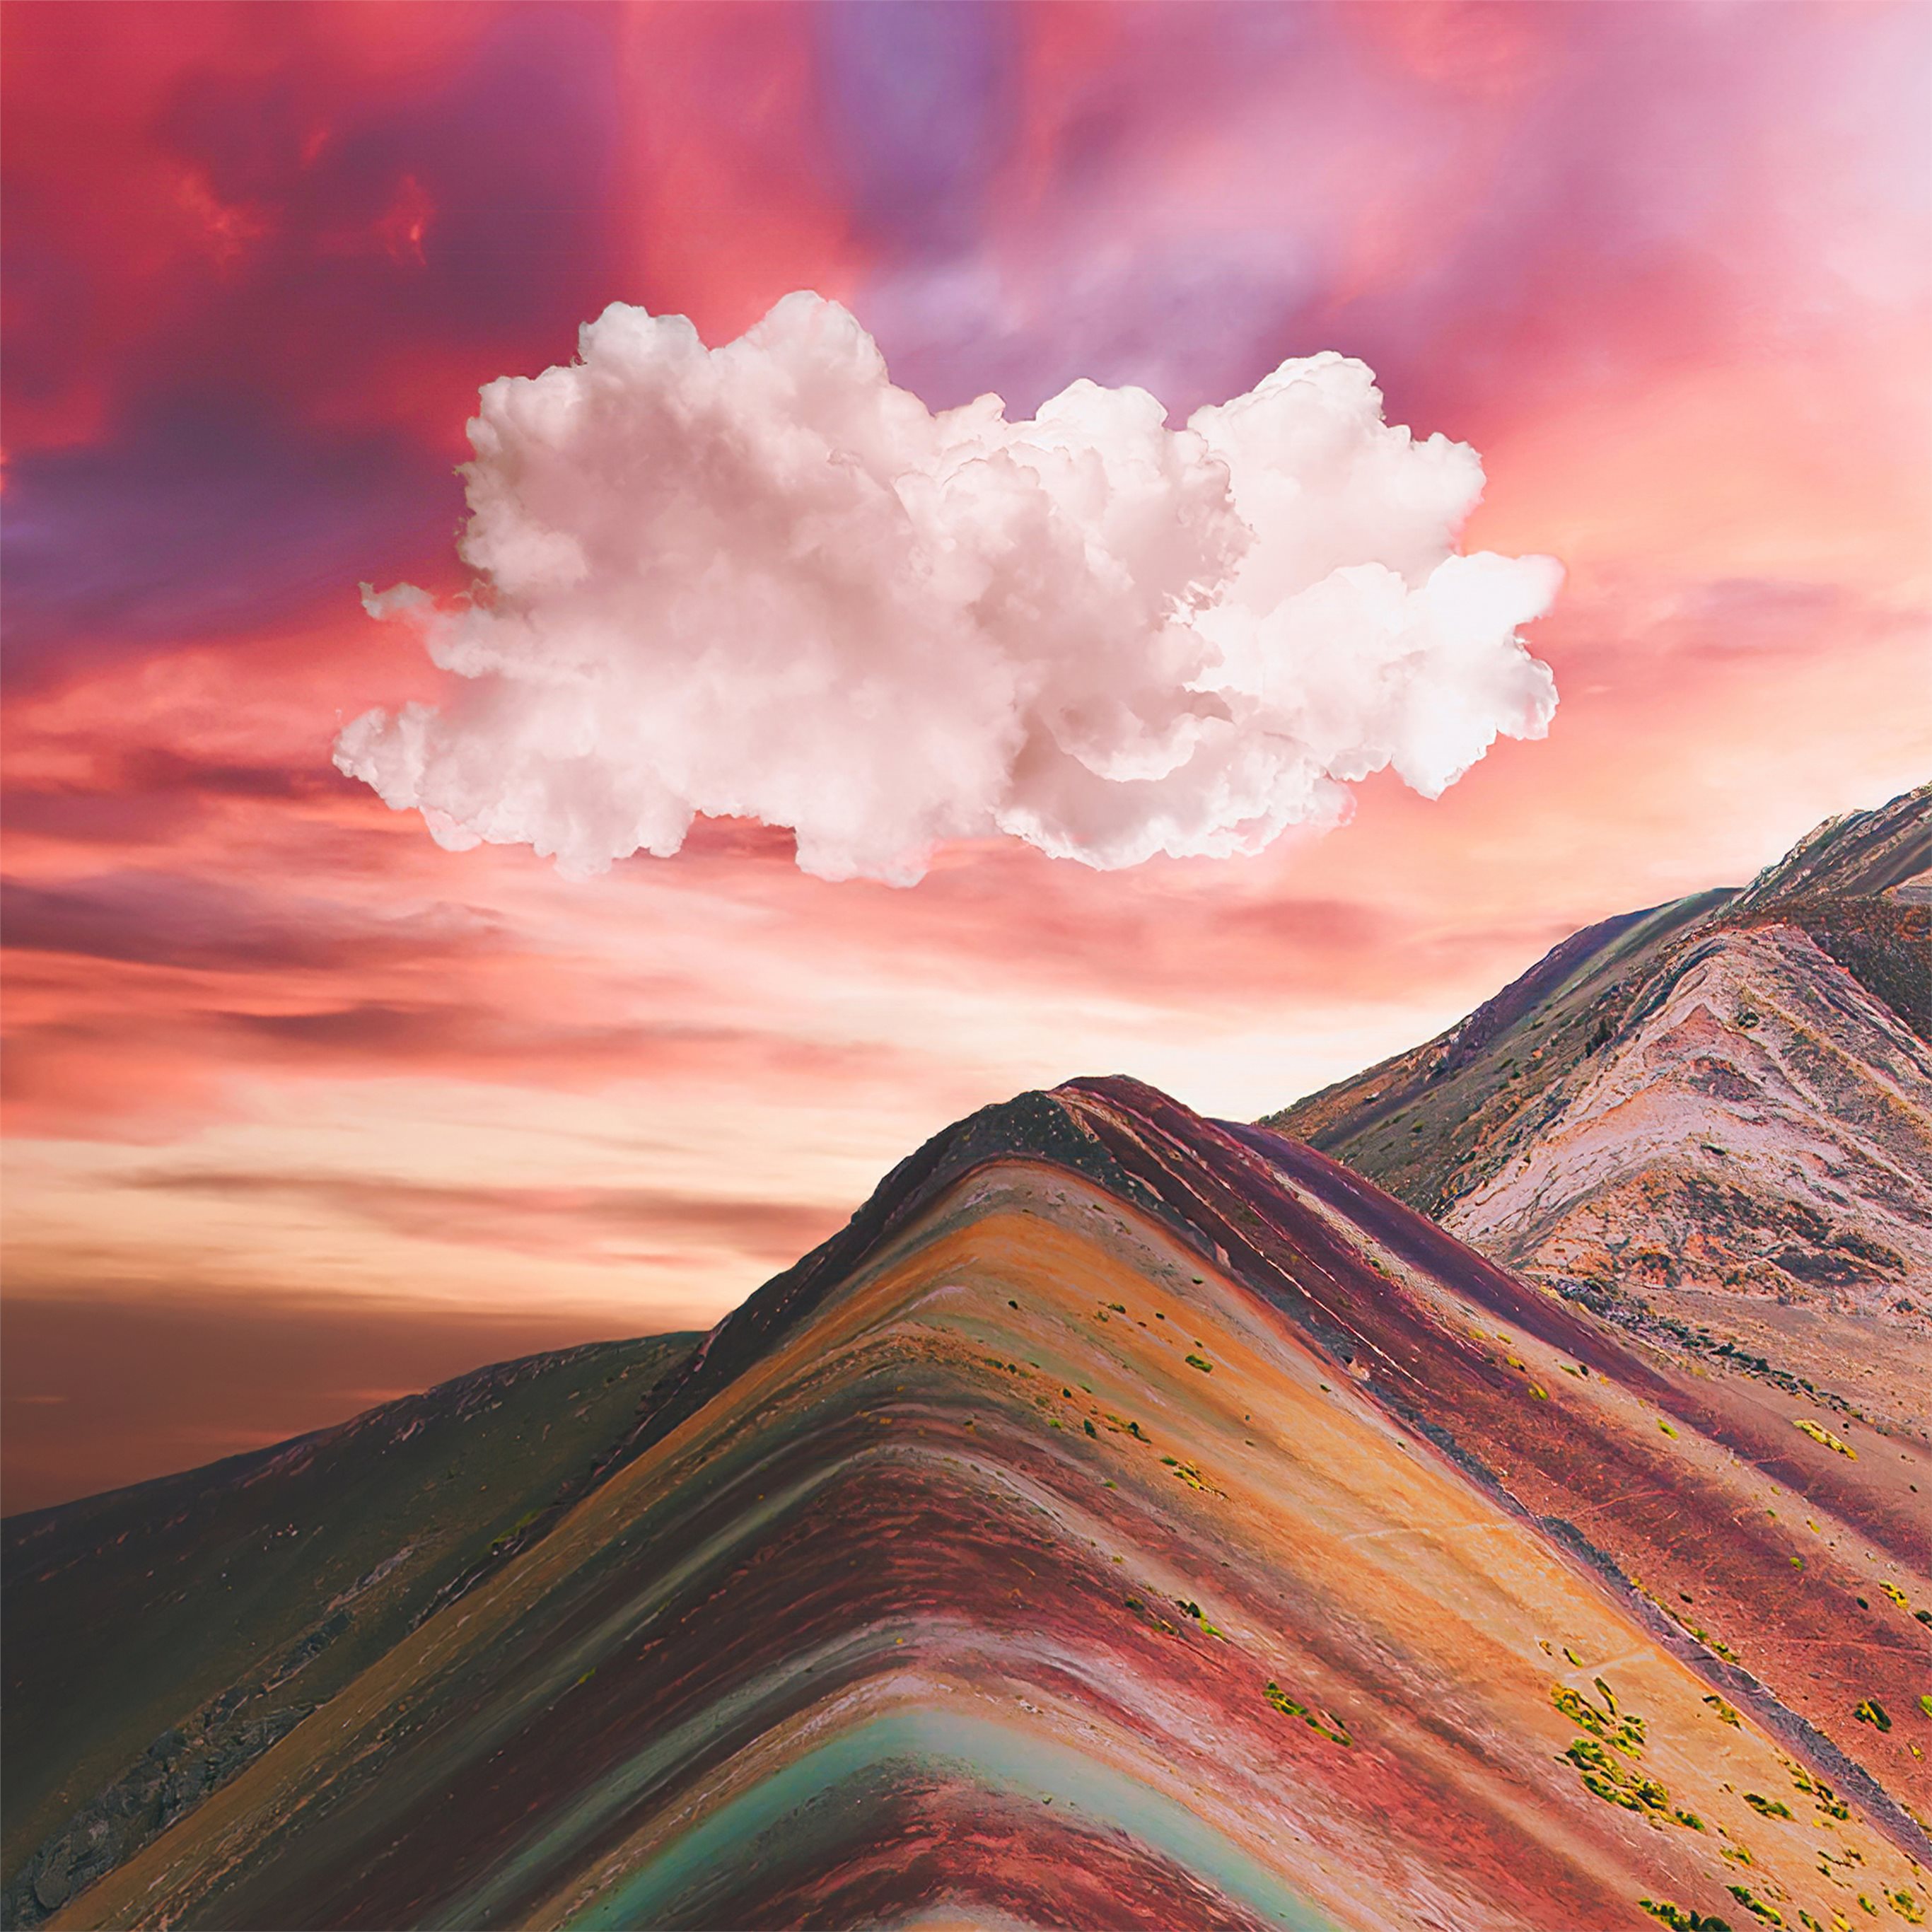 Núi Cầu Vồng là một trong những điểm đến du lịch tuyệt vời của Peru. Với sắc màu rực rỡ của lớp đá hoá thạch nhiều màu sắc, nơi đây sẽ khiến bạn ngạc nhiên và thích thú bởi cảnh quan đẹp như tranh vẽ. Hãy mời bạn bè và người thân cùng tận hưởng chuyến du lịch thú vị tại Núi Cầu Vồng.